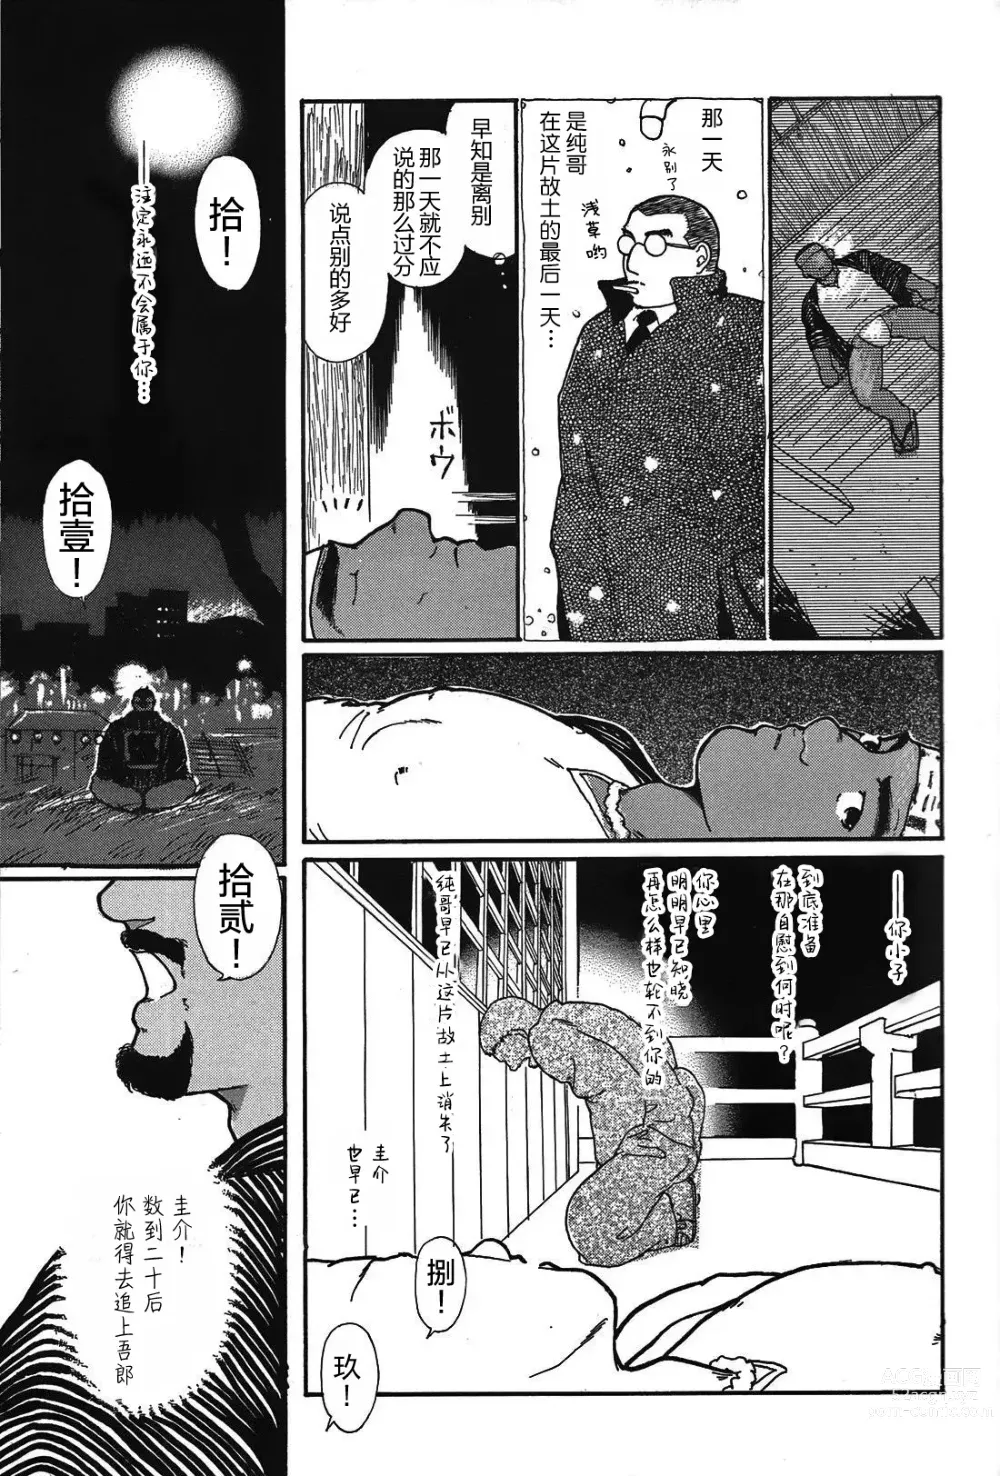 Page 30 of manga 纯情-第一章-纯情!!